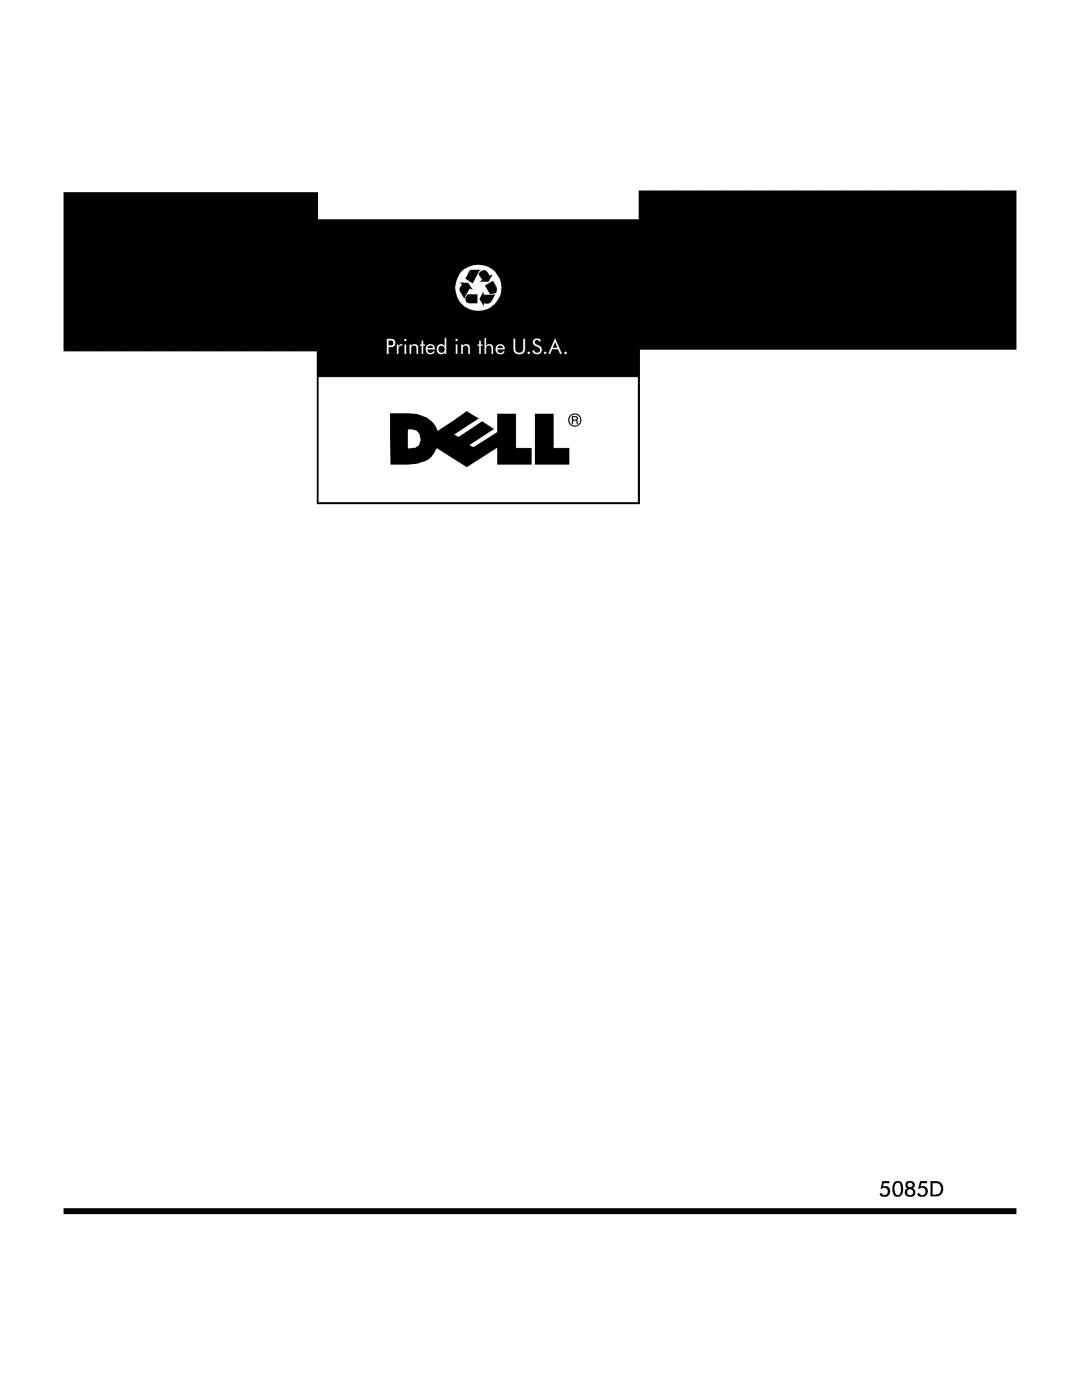 Dell 130T manual 5085D 